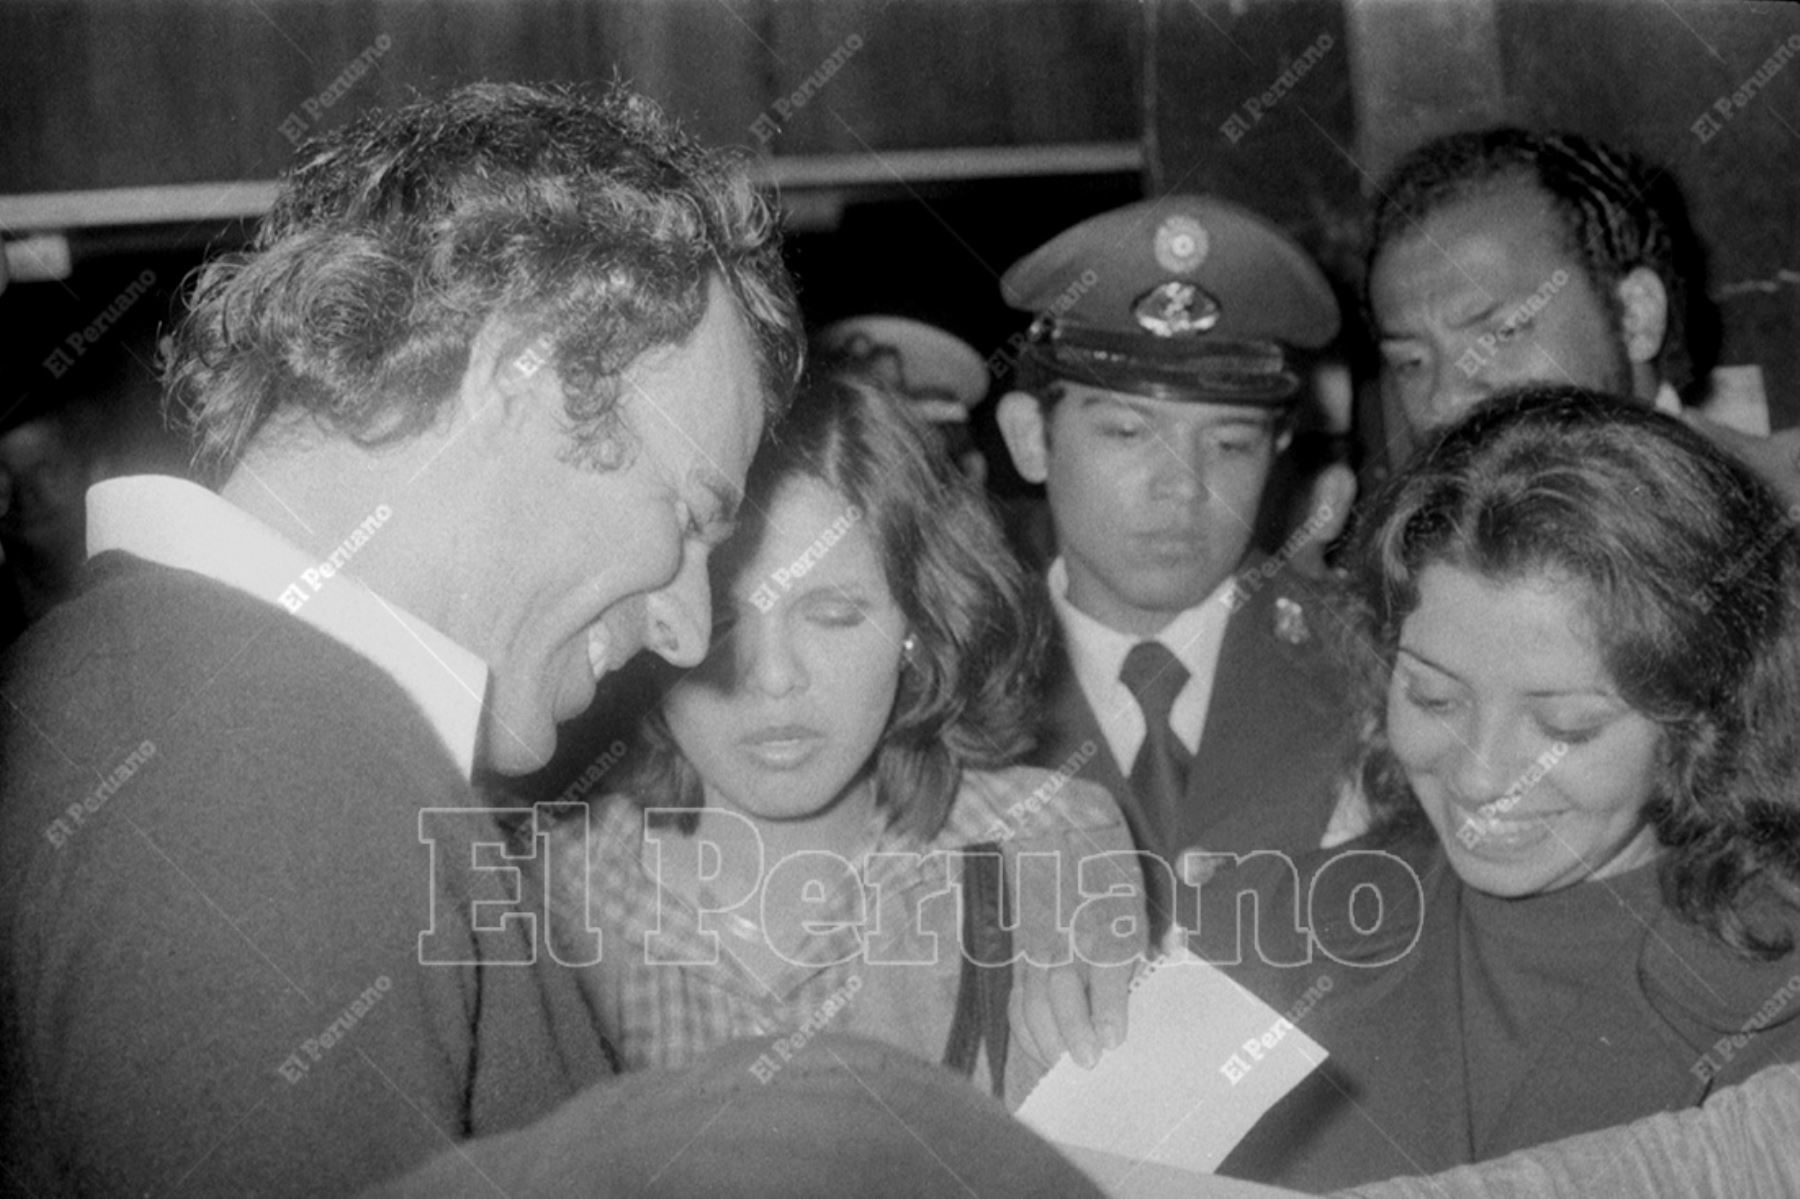 Callao - 13 octubre 1976 / El cantante español Julio Iglesias firma autógrafos a su llegada a nuestro país para una serie de conciertos.  Foto: Archivo Histórico de El Peruano / Virgilio Molero